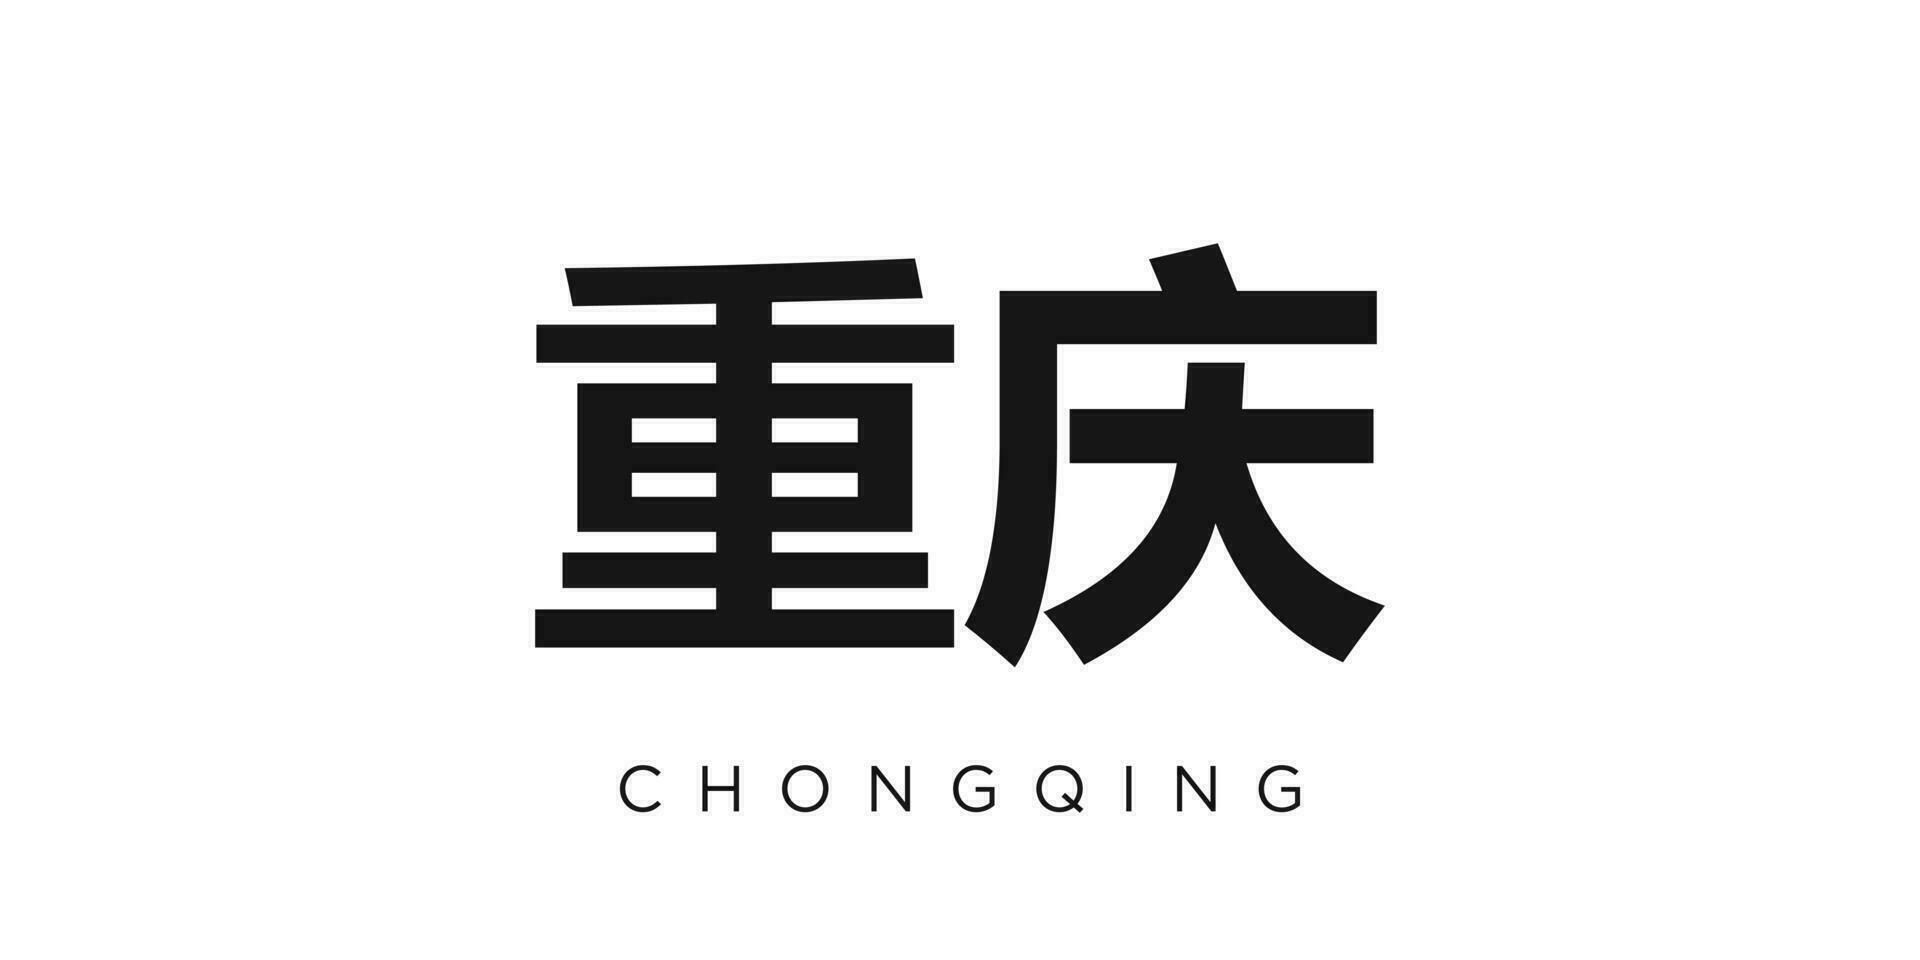 chongqing dans le Chine emblème. le conception Caractéristiques une géométrique style, vecteur illustration avec audacieux typographie dans une moderne Police de caractère. le graphique slogan caractères.